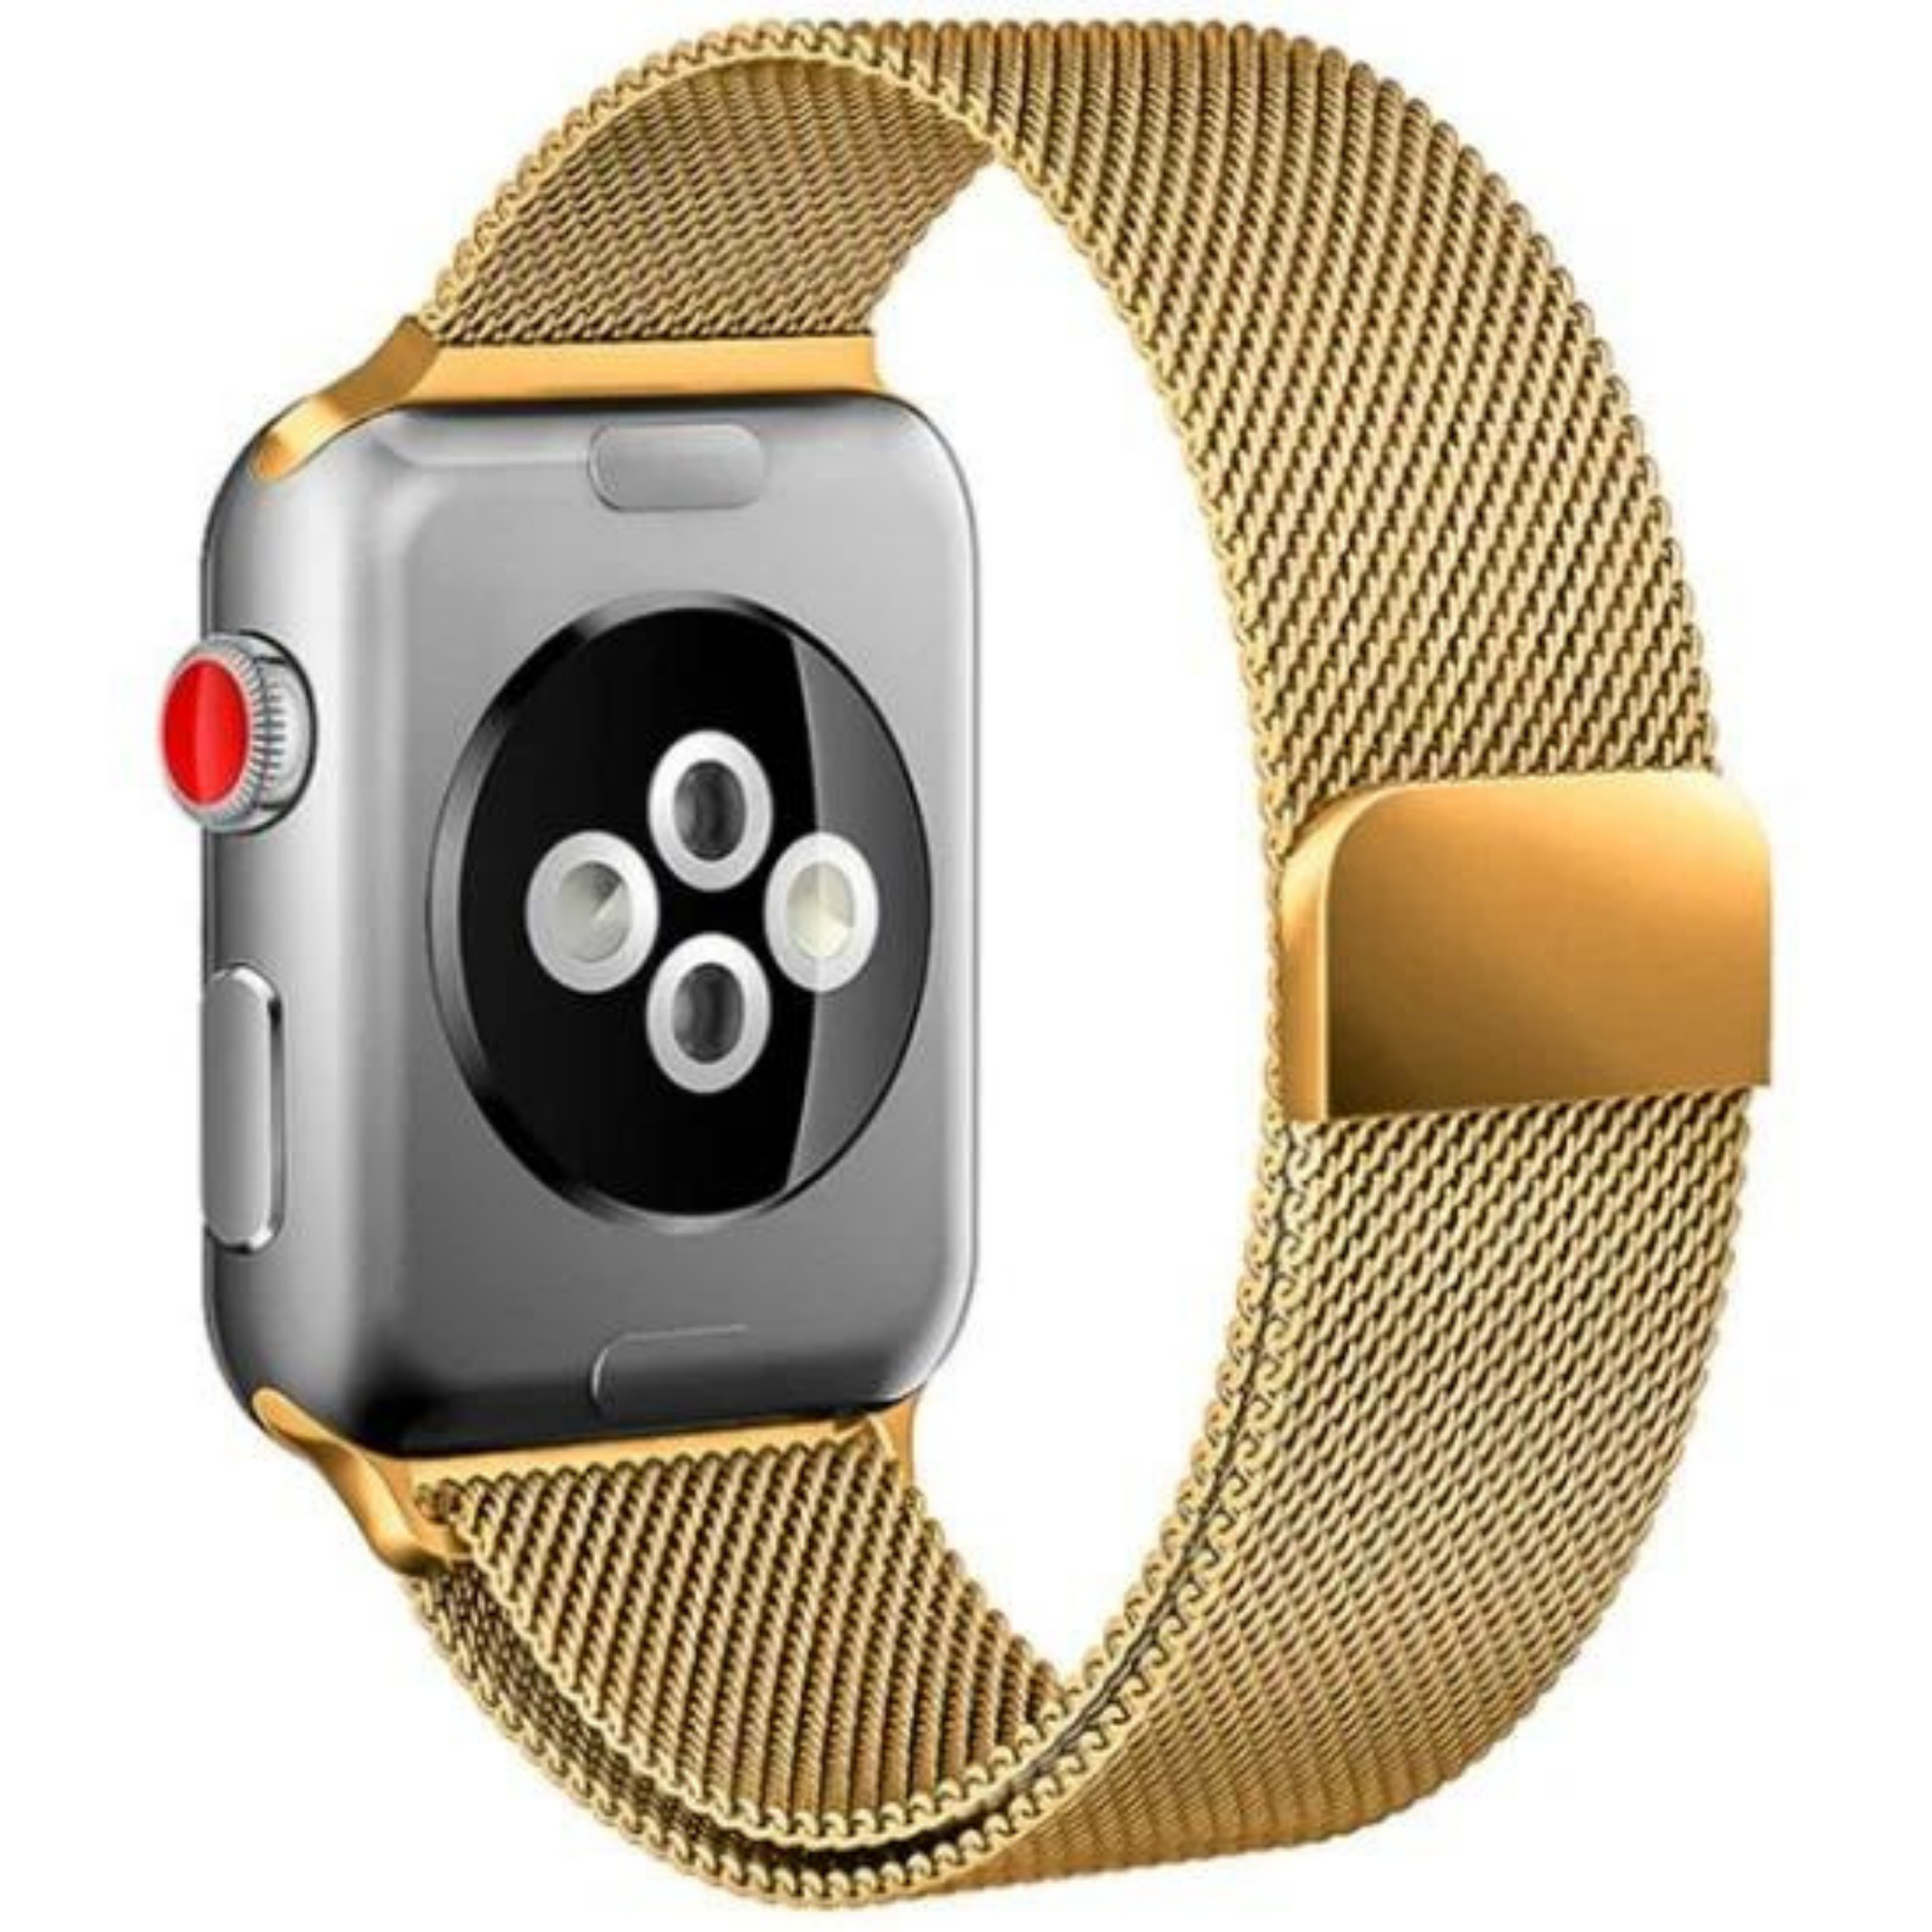 Браслет для смарт часов watch. Ремешок для Apple watch 44mm Миланская петля. Эппл вотч se 40мм. Ремешки для АПЛ вотч 7. Эппл вотч с металлическим ремешком.